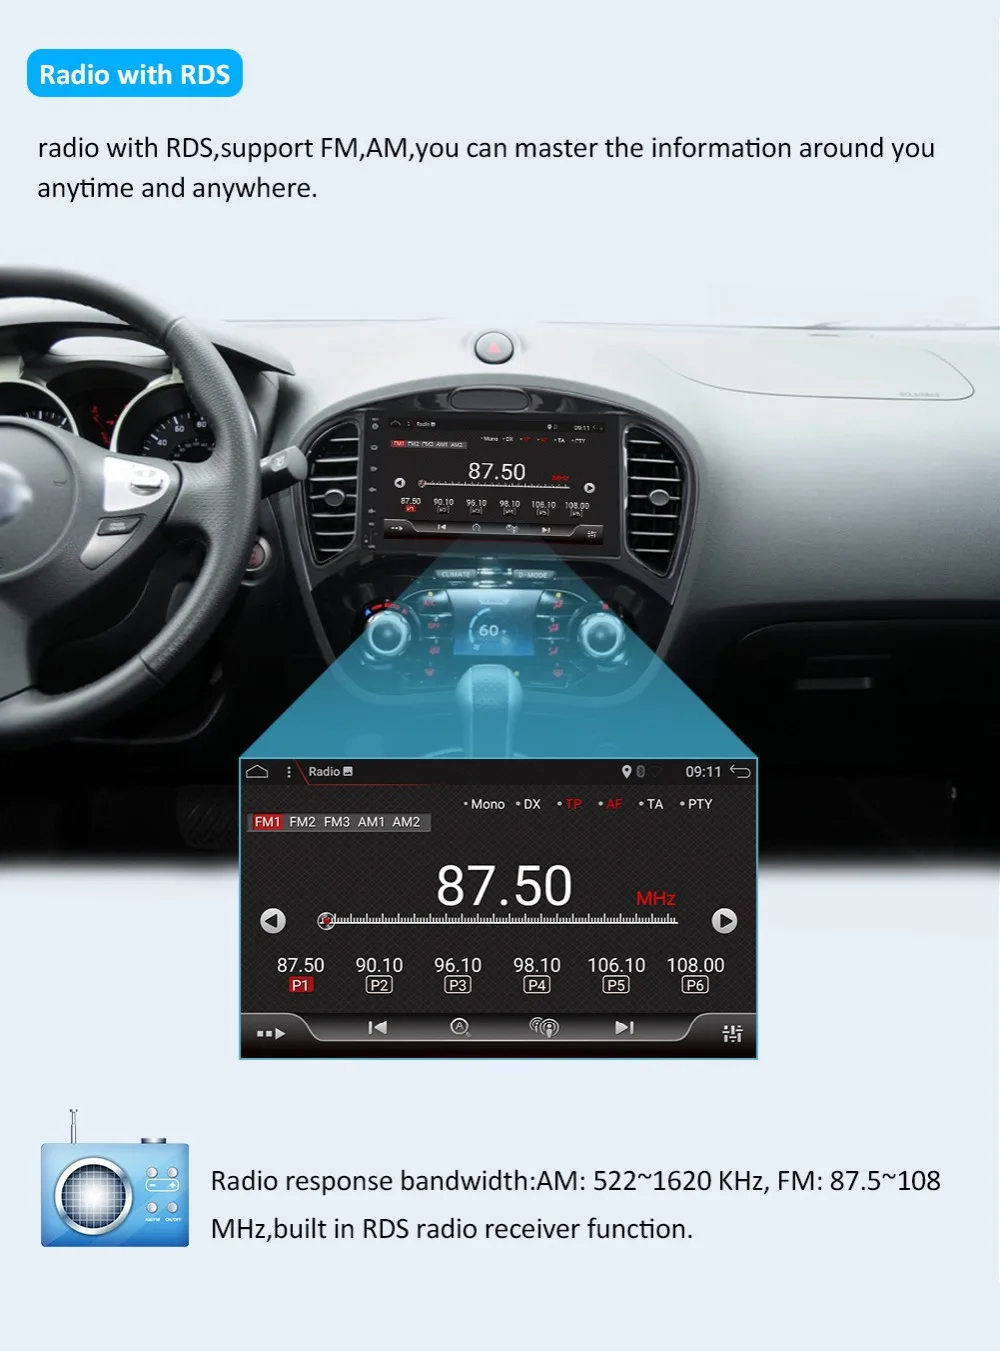 32G rom Восьмиядерный " в тире 2 Din Android 9,0 автомобильный стерео gps для Nissan Juke Авто Радио FM RDS WiFi BT навигационная камера